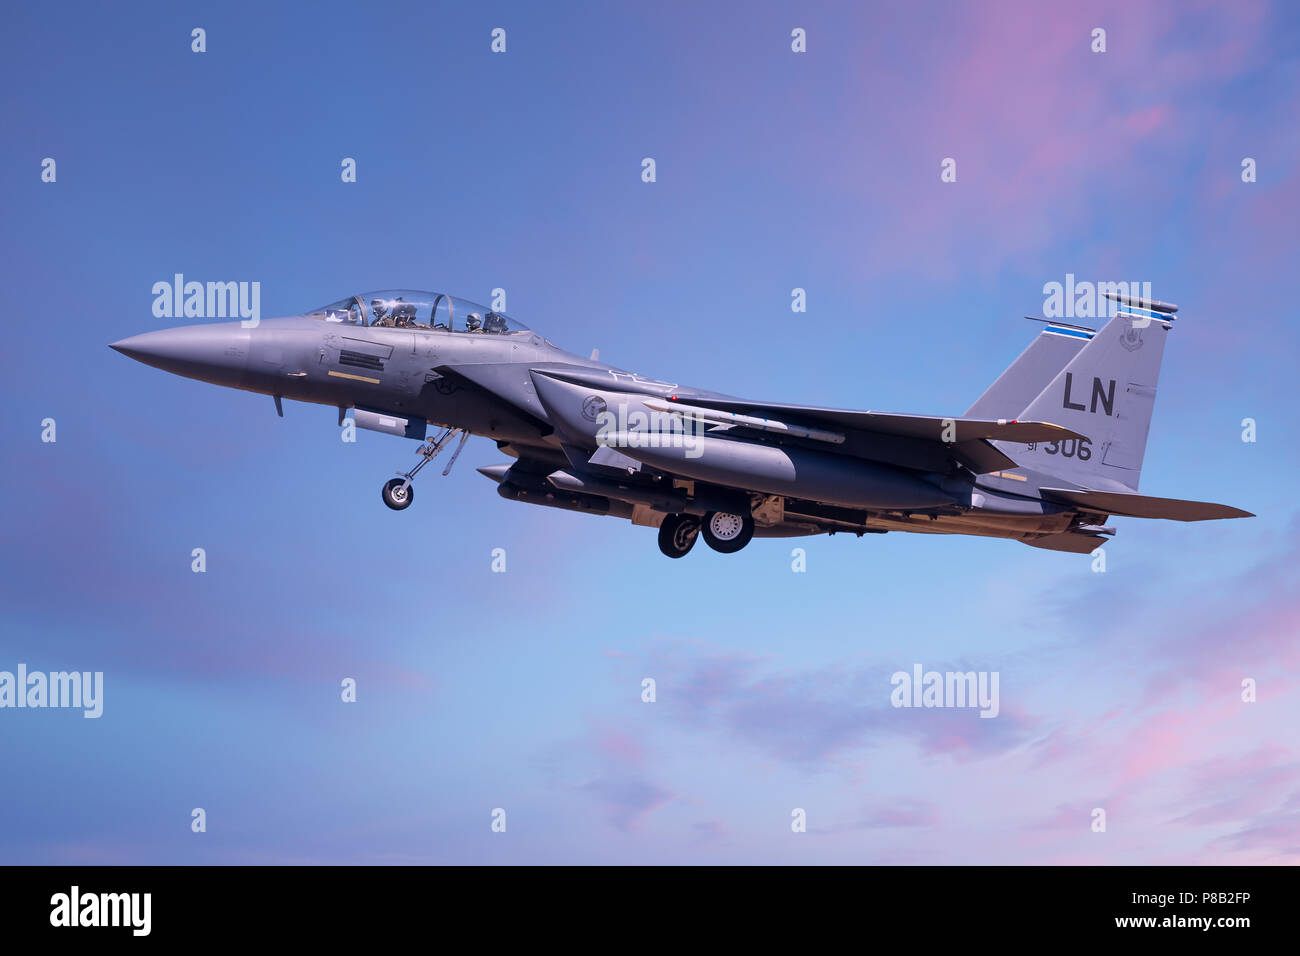 F15 Strike Eagle in den kommenden an RAF Lakenheath United States Air Force, Suffolk, England 2018 zu landen. Fahrwerk absenken auf Ansatz zur Start- und Landebahn. Blau Stockfoto